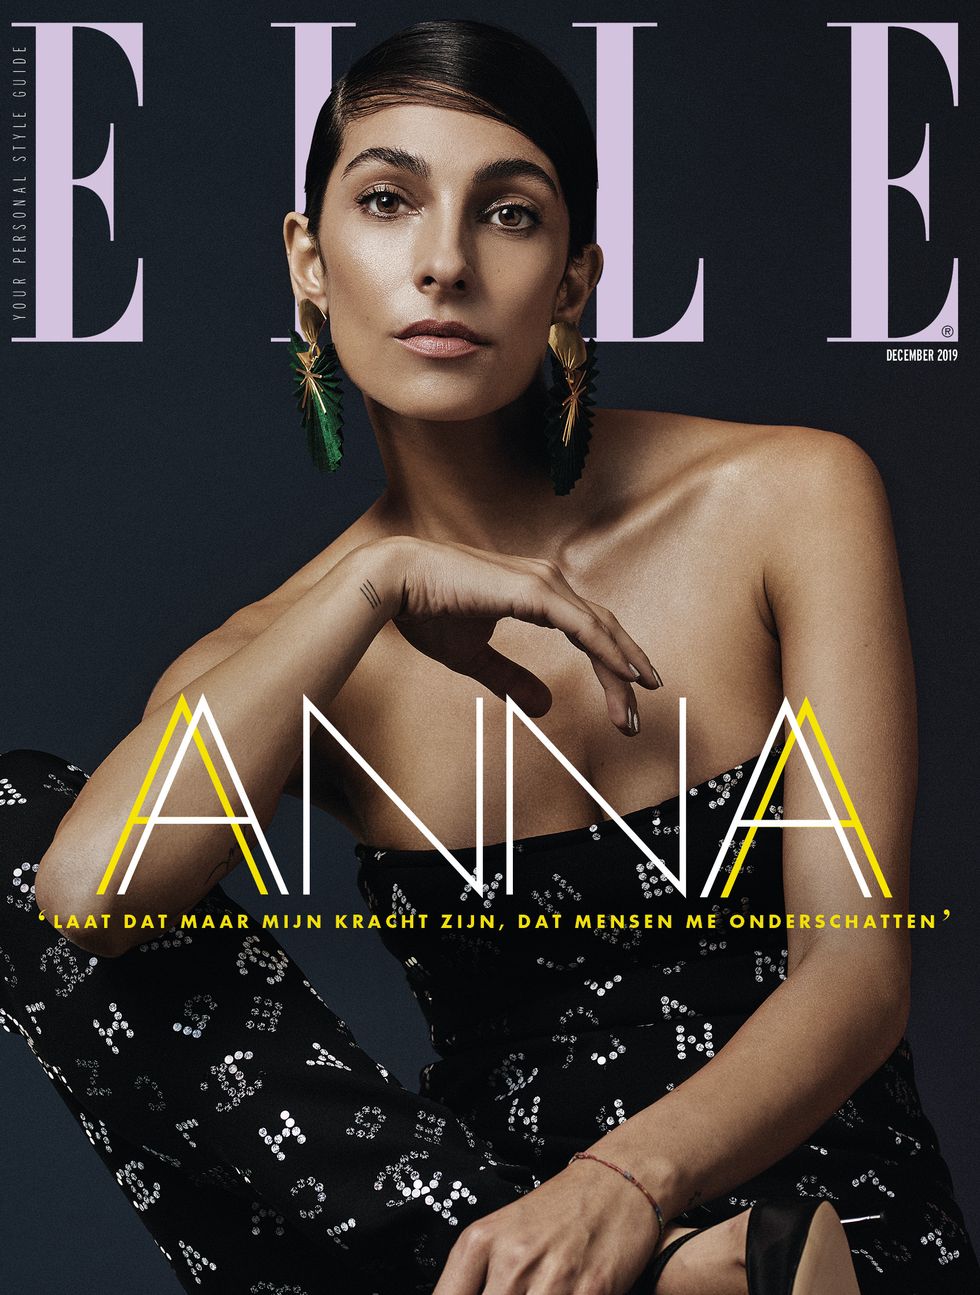 ELLE's decembernummer van 2019, met op de cover ondernemer Anna Nooshin.